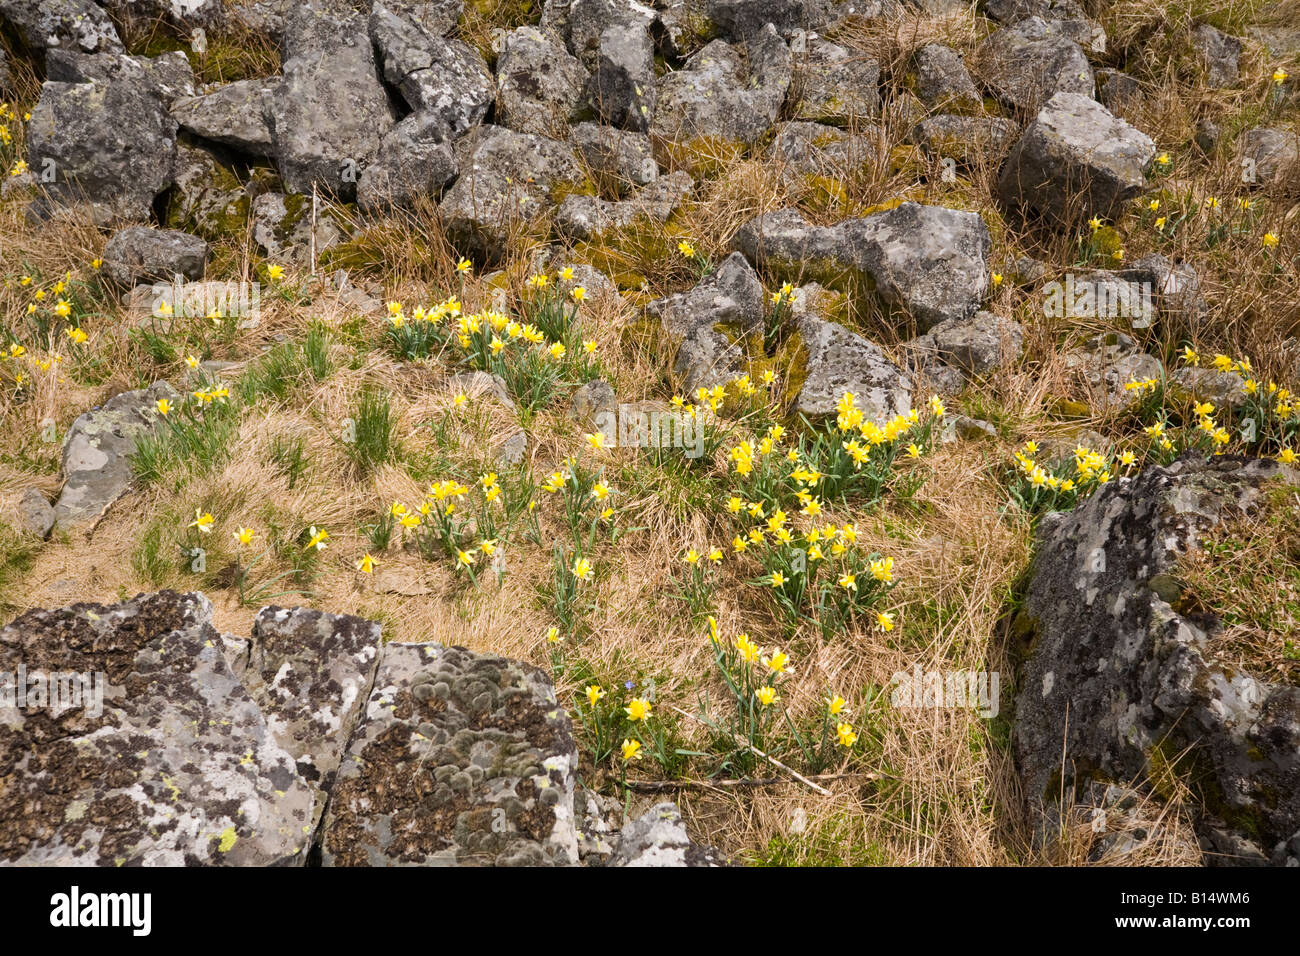 Les jonquilles sur le dessus de l'Cezallier Massif (France). Jonquilles (Narcissus pseudonarcissus) dans le Cézallier (France). Banque D'Images